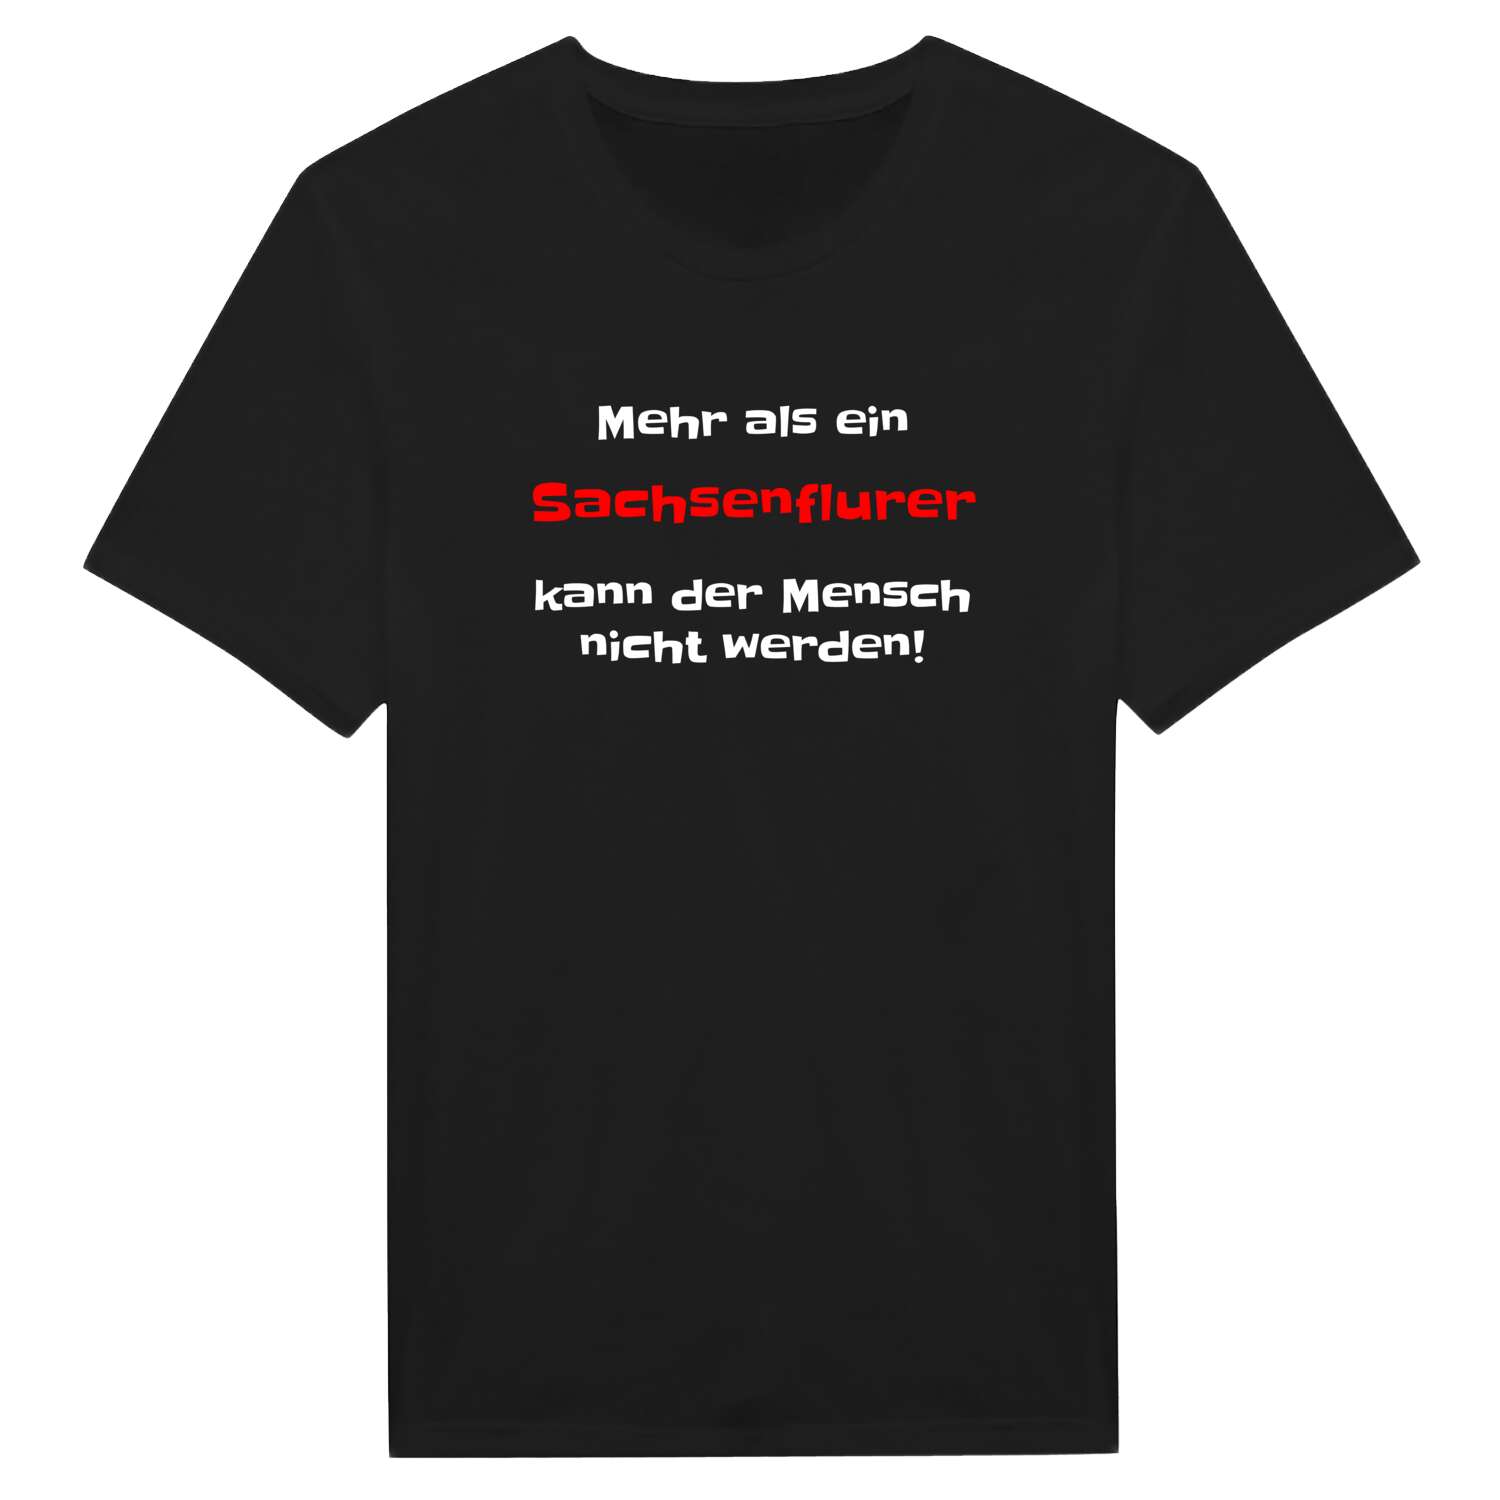 Sachsenflur T-Shirt »Mehr als ein«